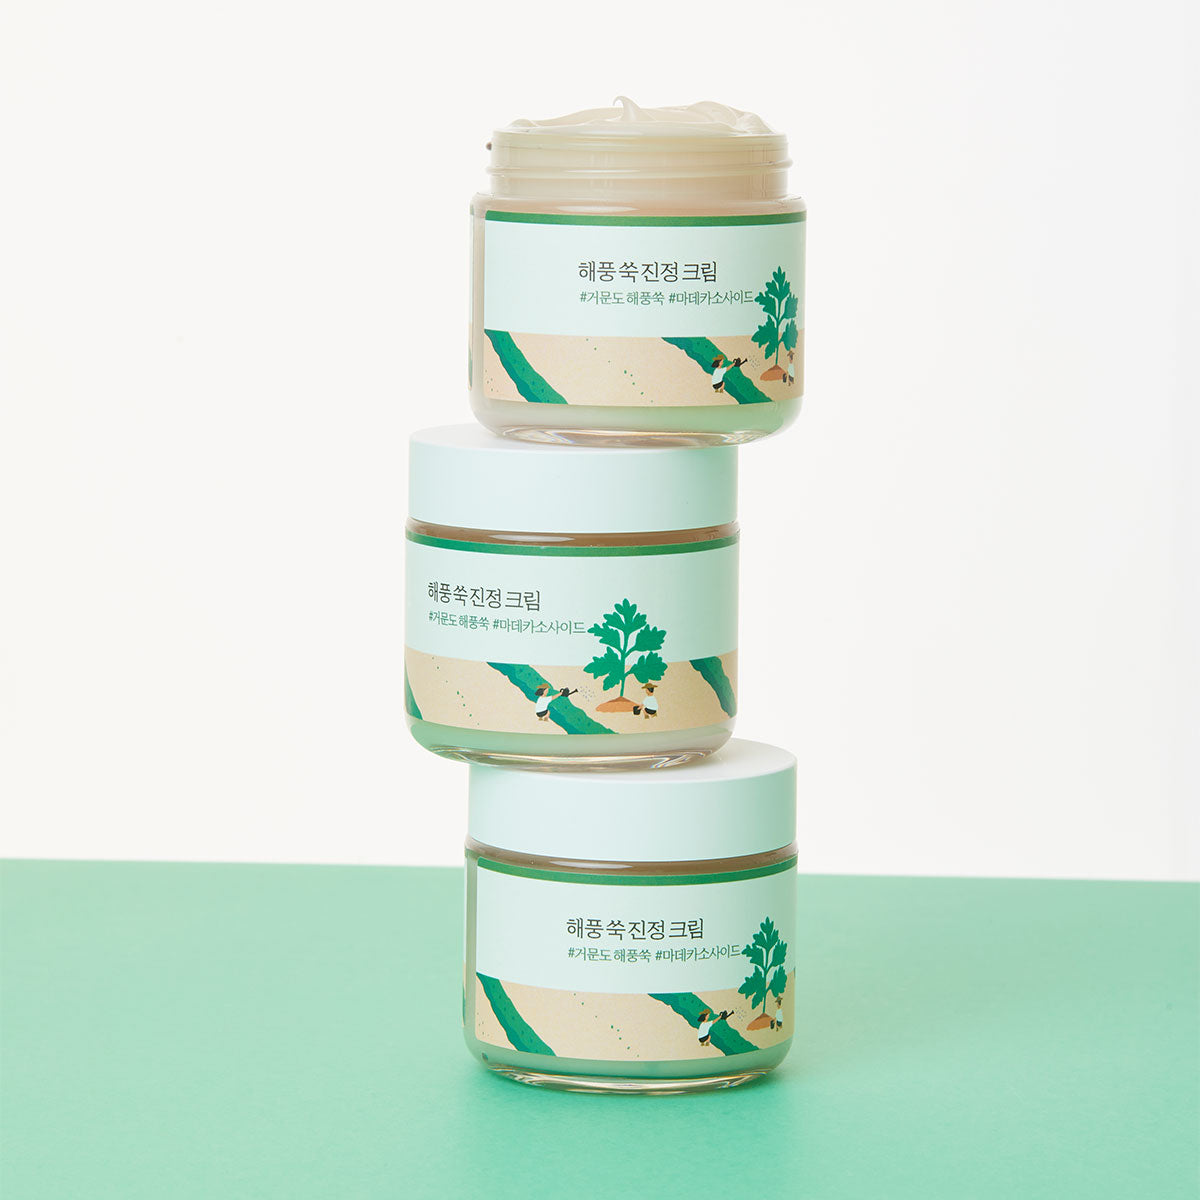 Round Lab - Mugwort Calming Cream